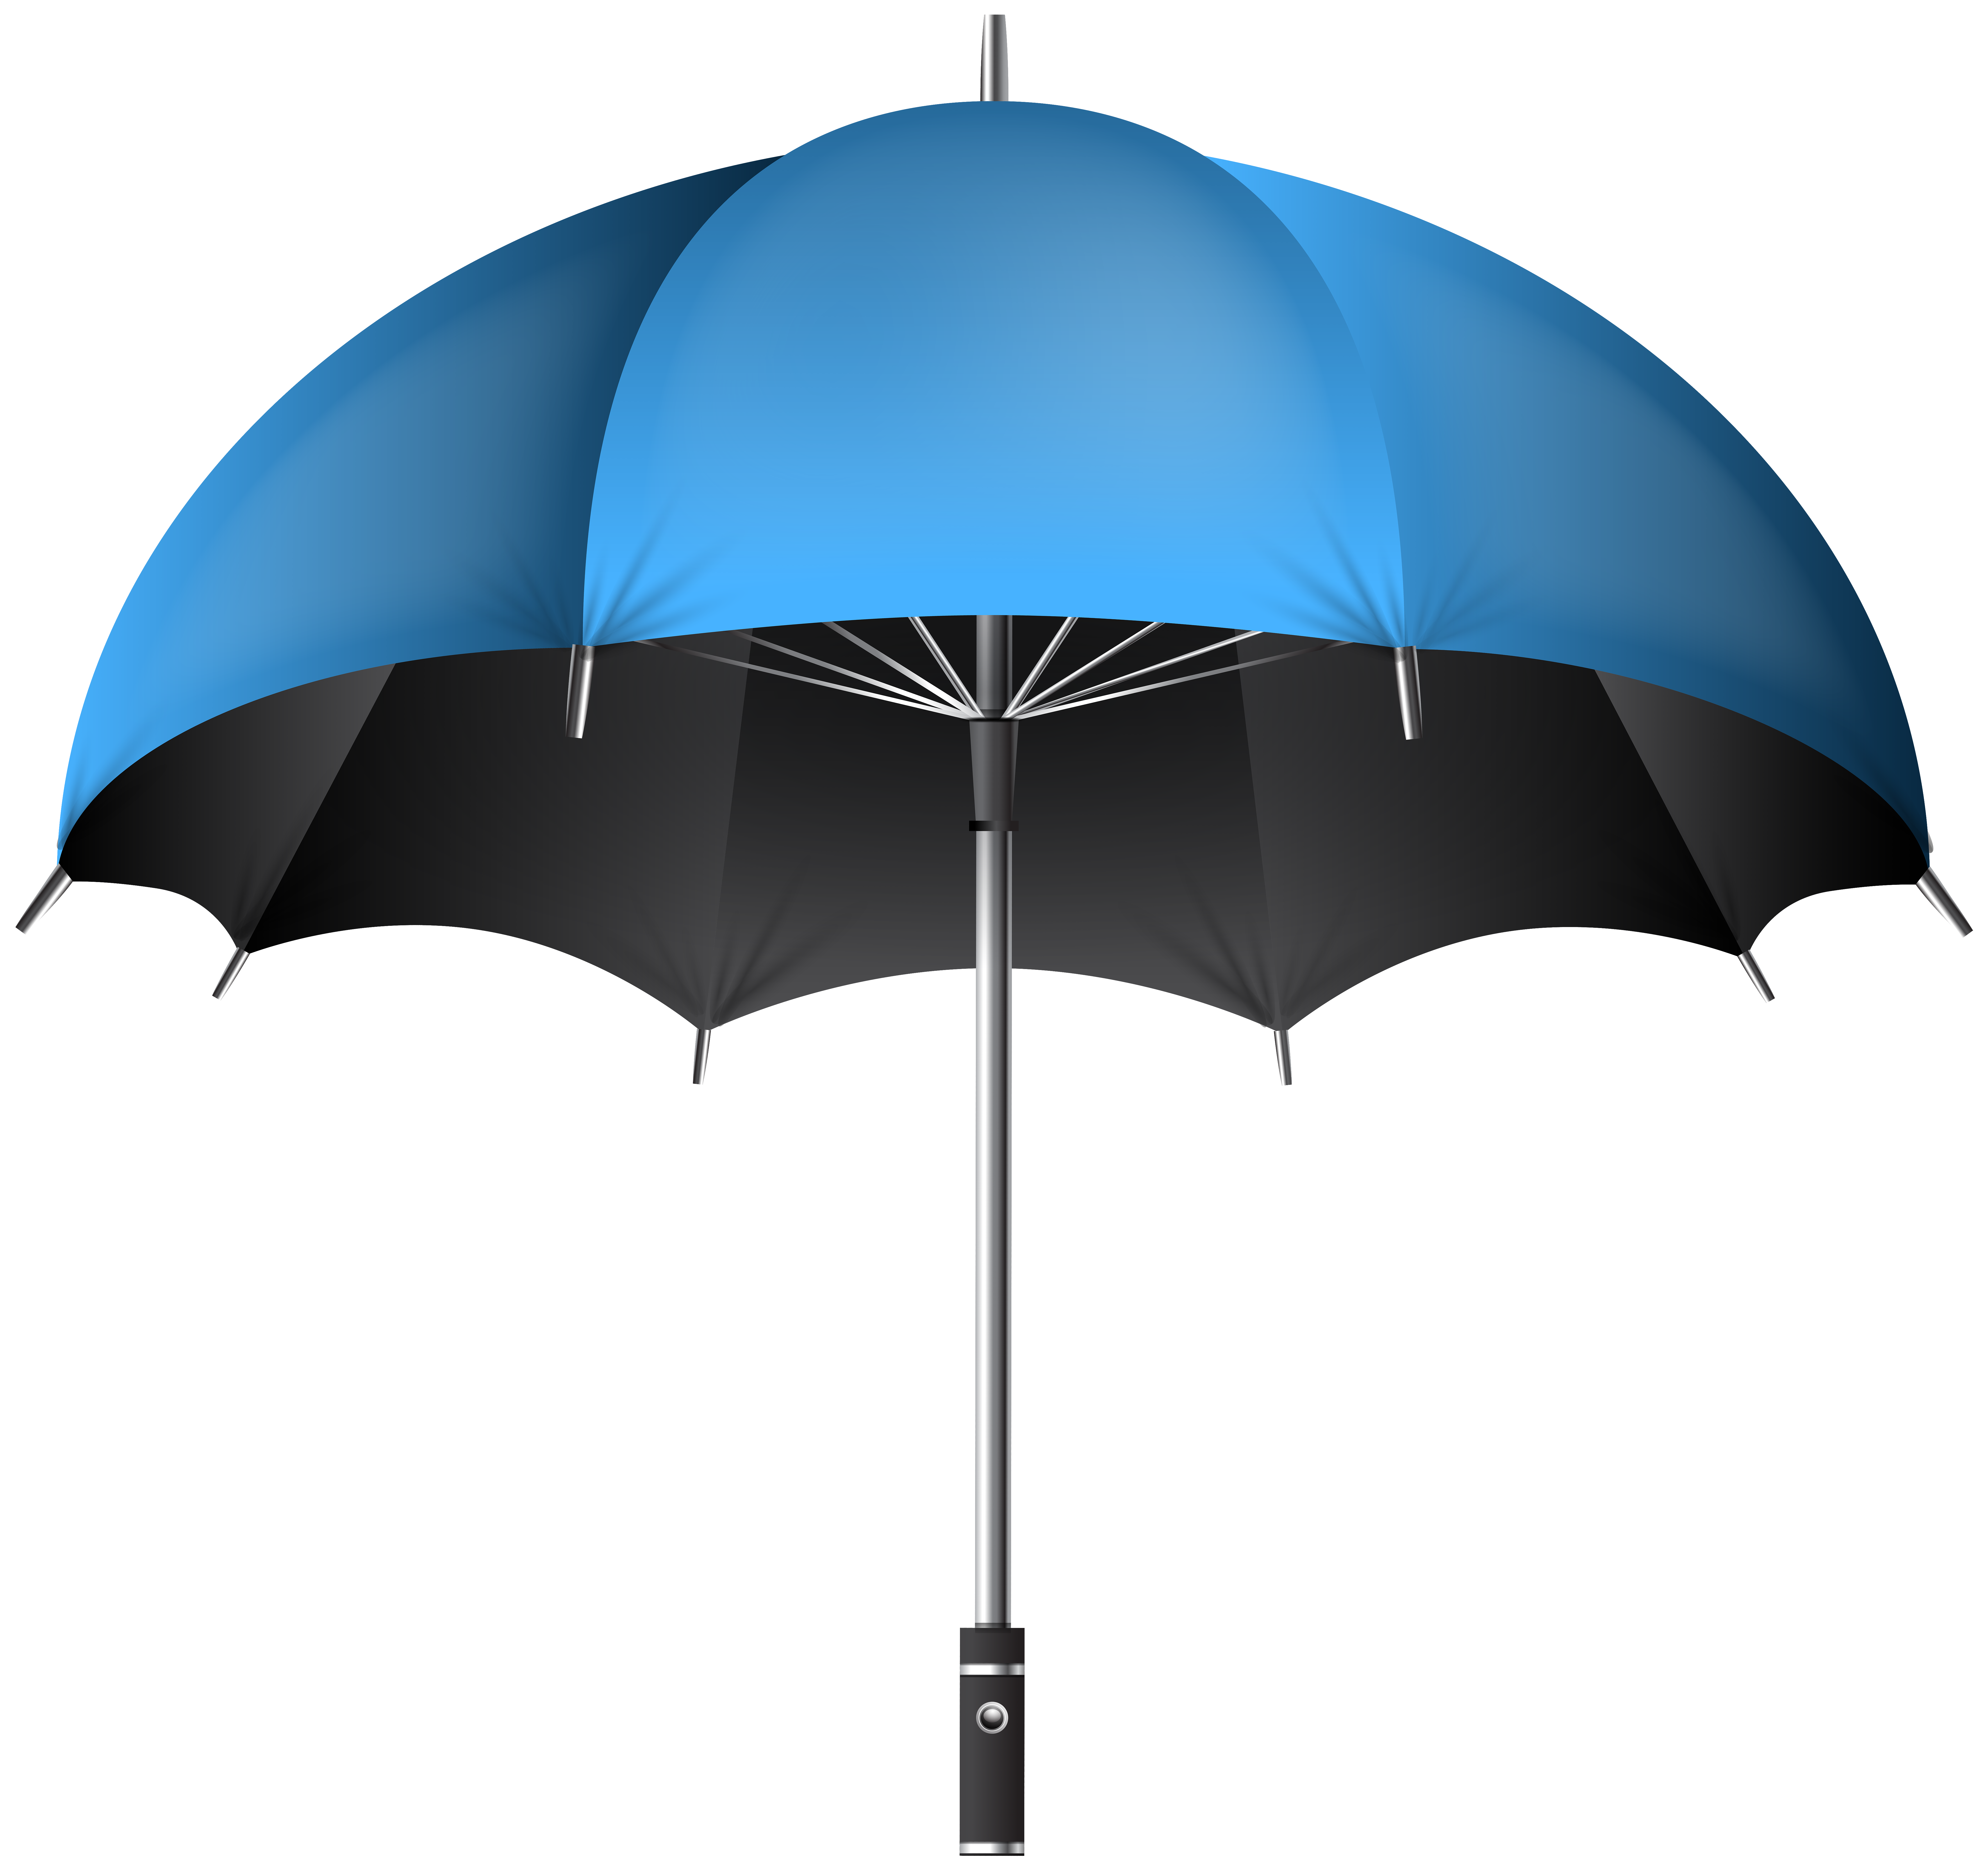 Blue Umbrella Transparent PNG Clip Art Image | Gallery ...